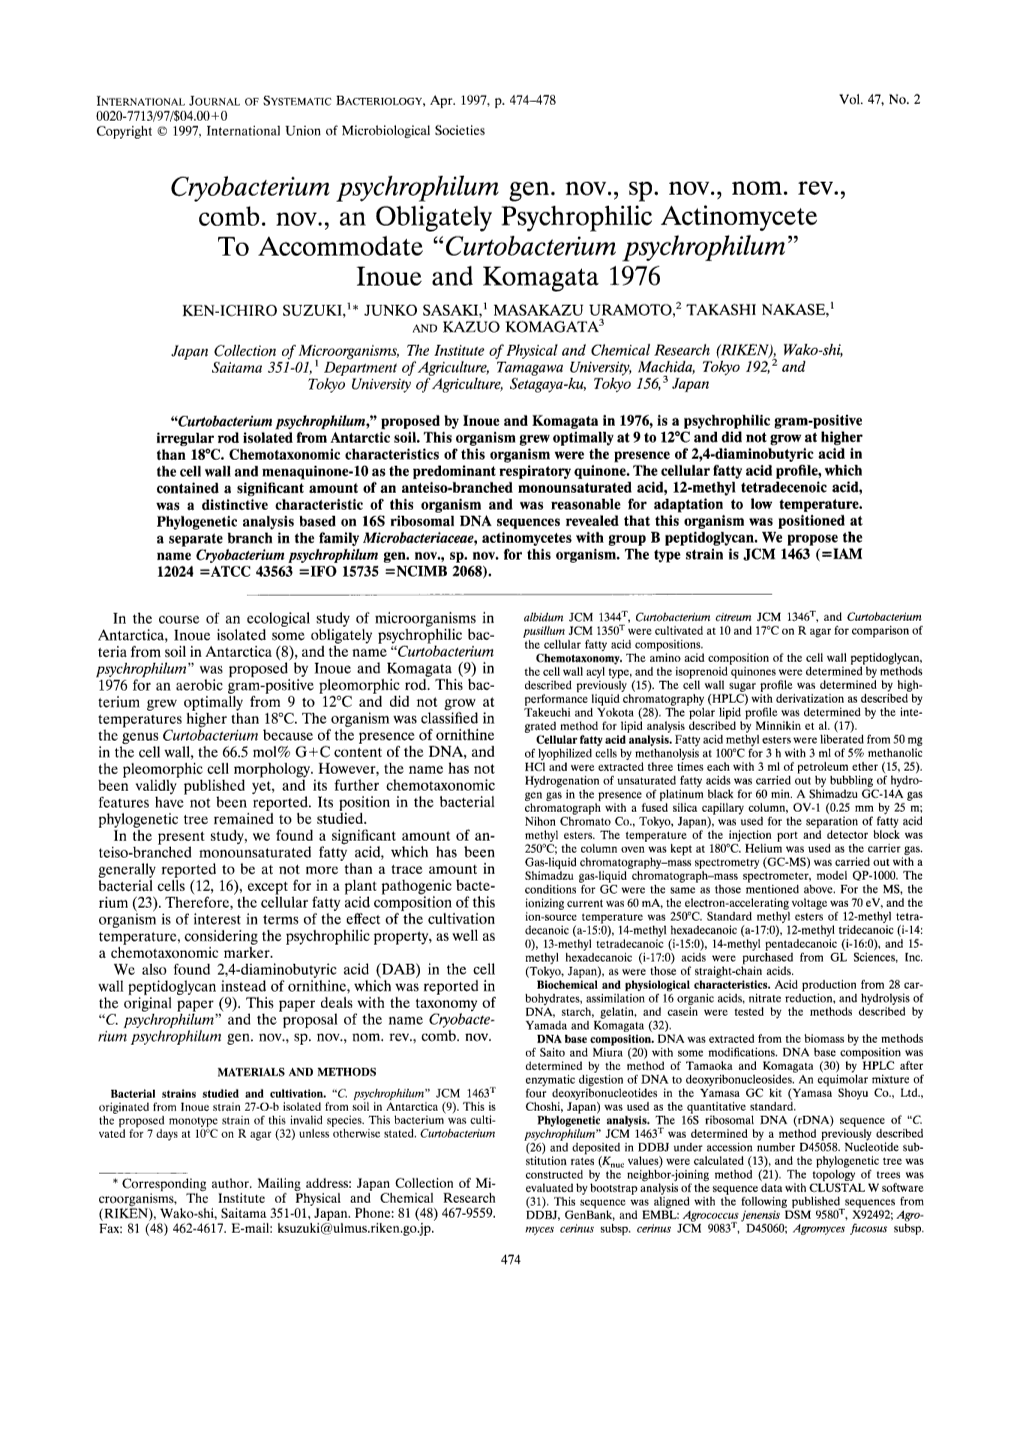 Cryobacterium Psychrophilum Gen. Nov., Sp. Nov., Nom. Rev., Comb. Nov